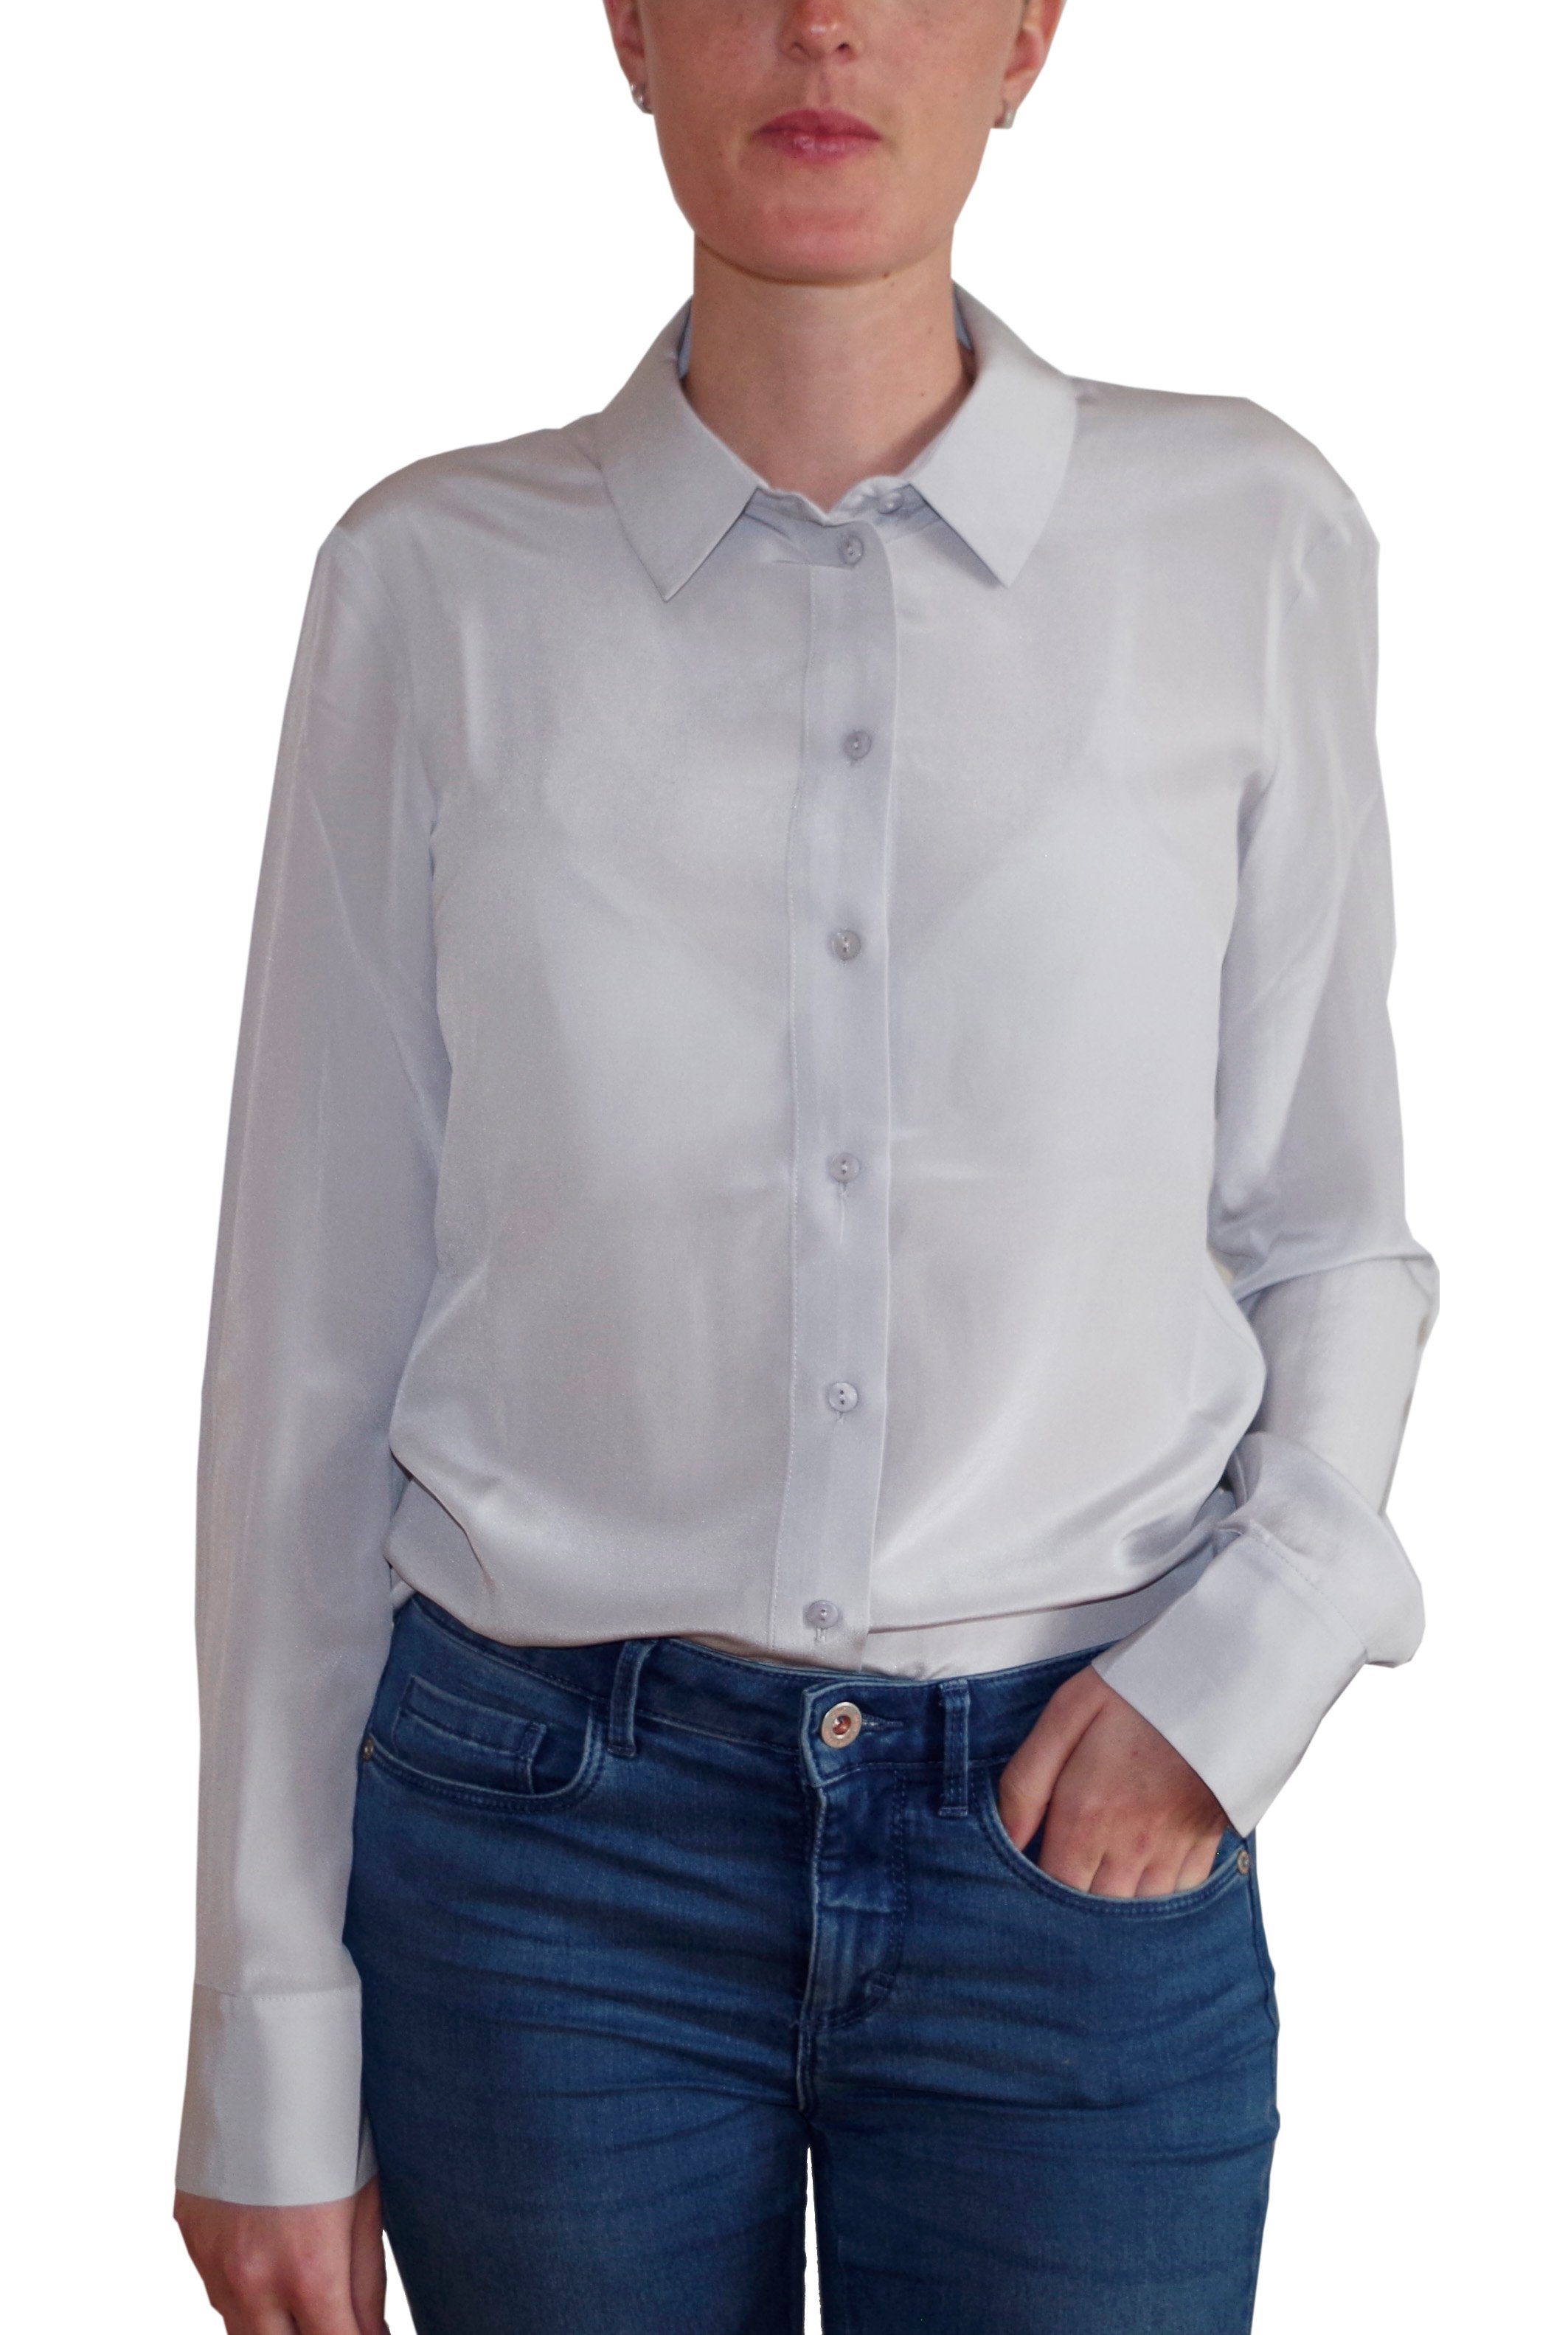 Bluse in grau online kaufen | OTTO